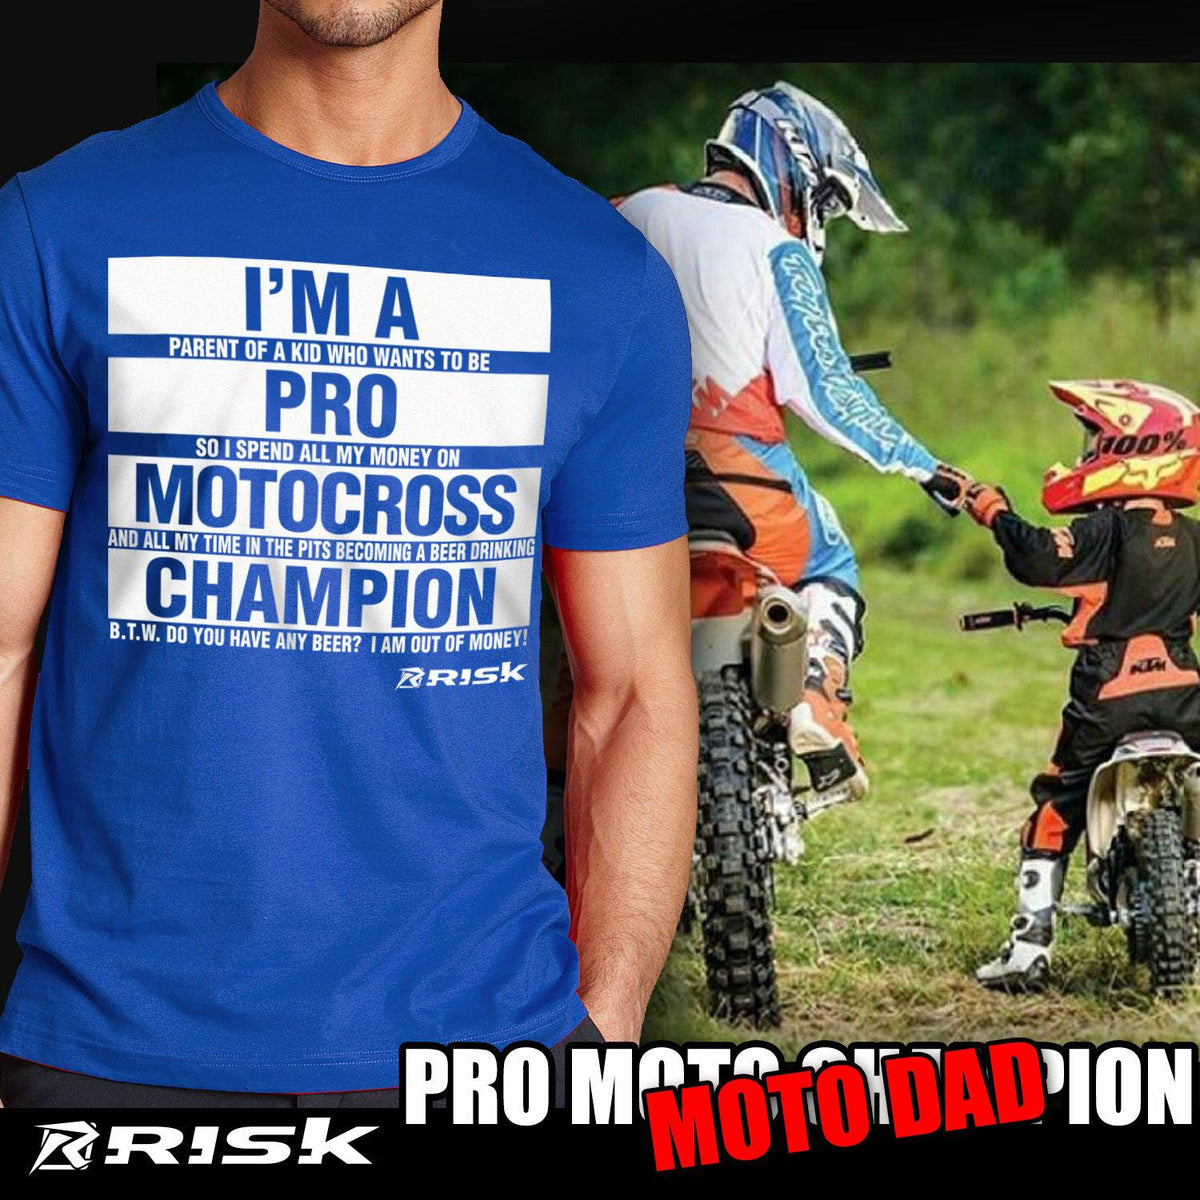 Tee-shirts Motocross - Livraison Gratuite